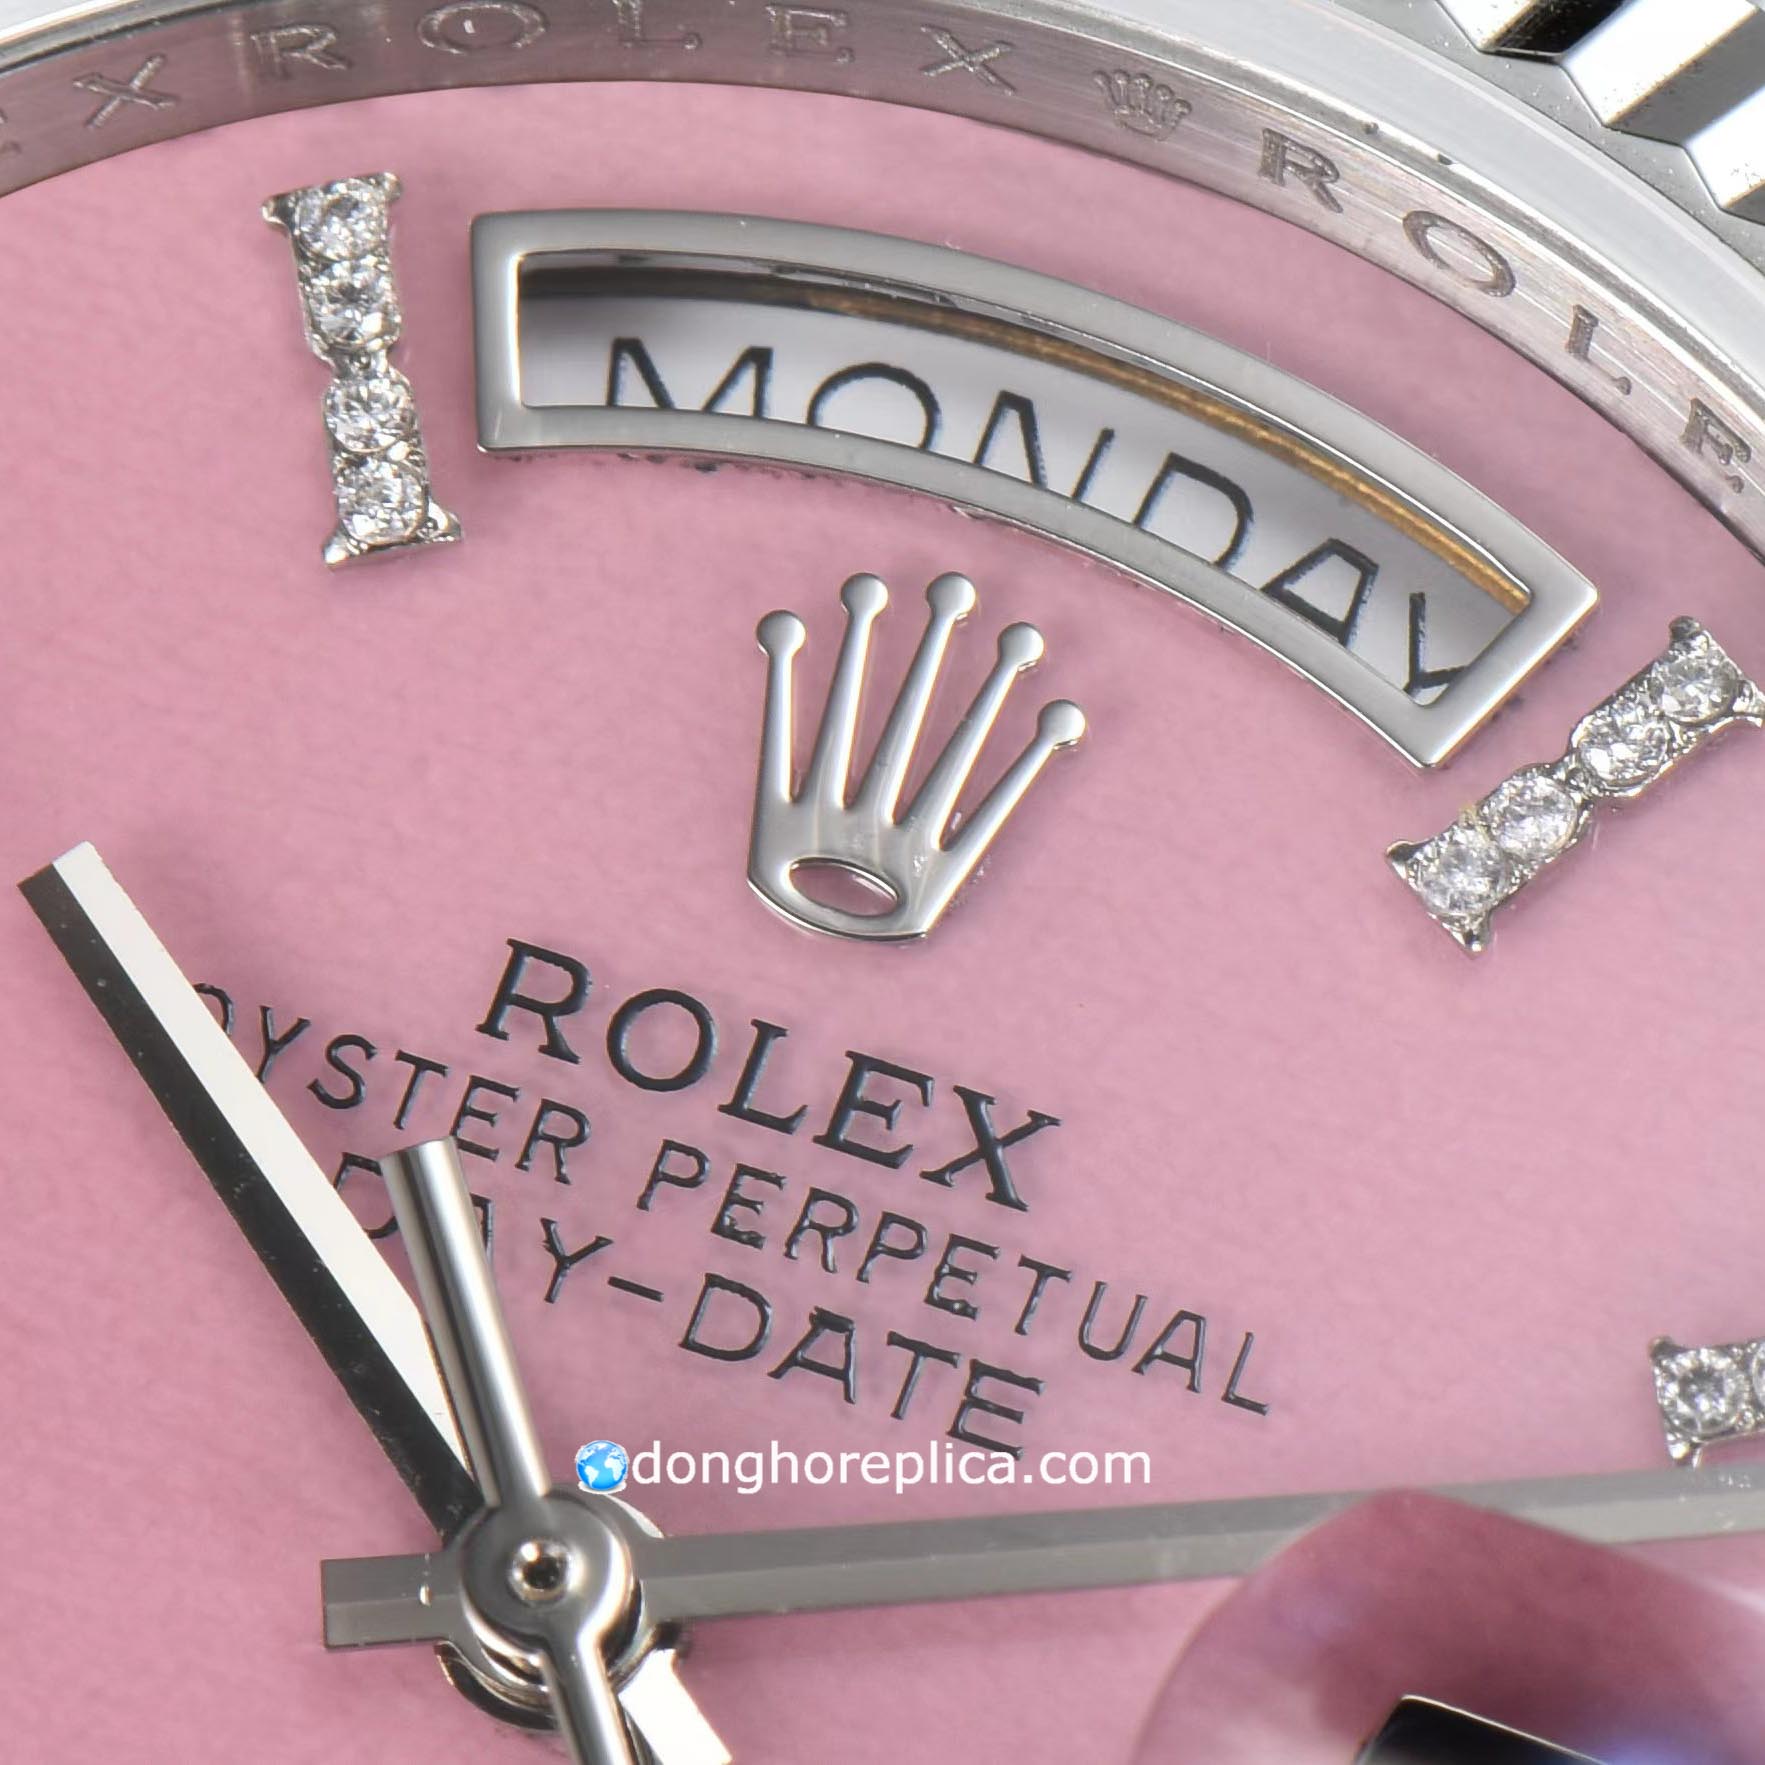 Đánh giá chi tiết đồng hồ Rolex 1.1 siêu cấp Day Date 128239-0021 Pink Dial